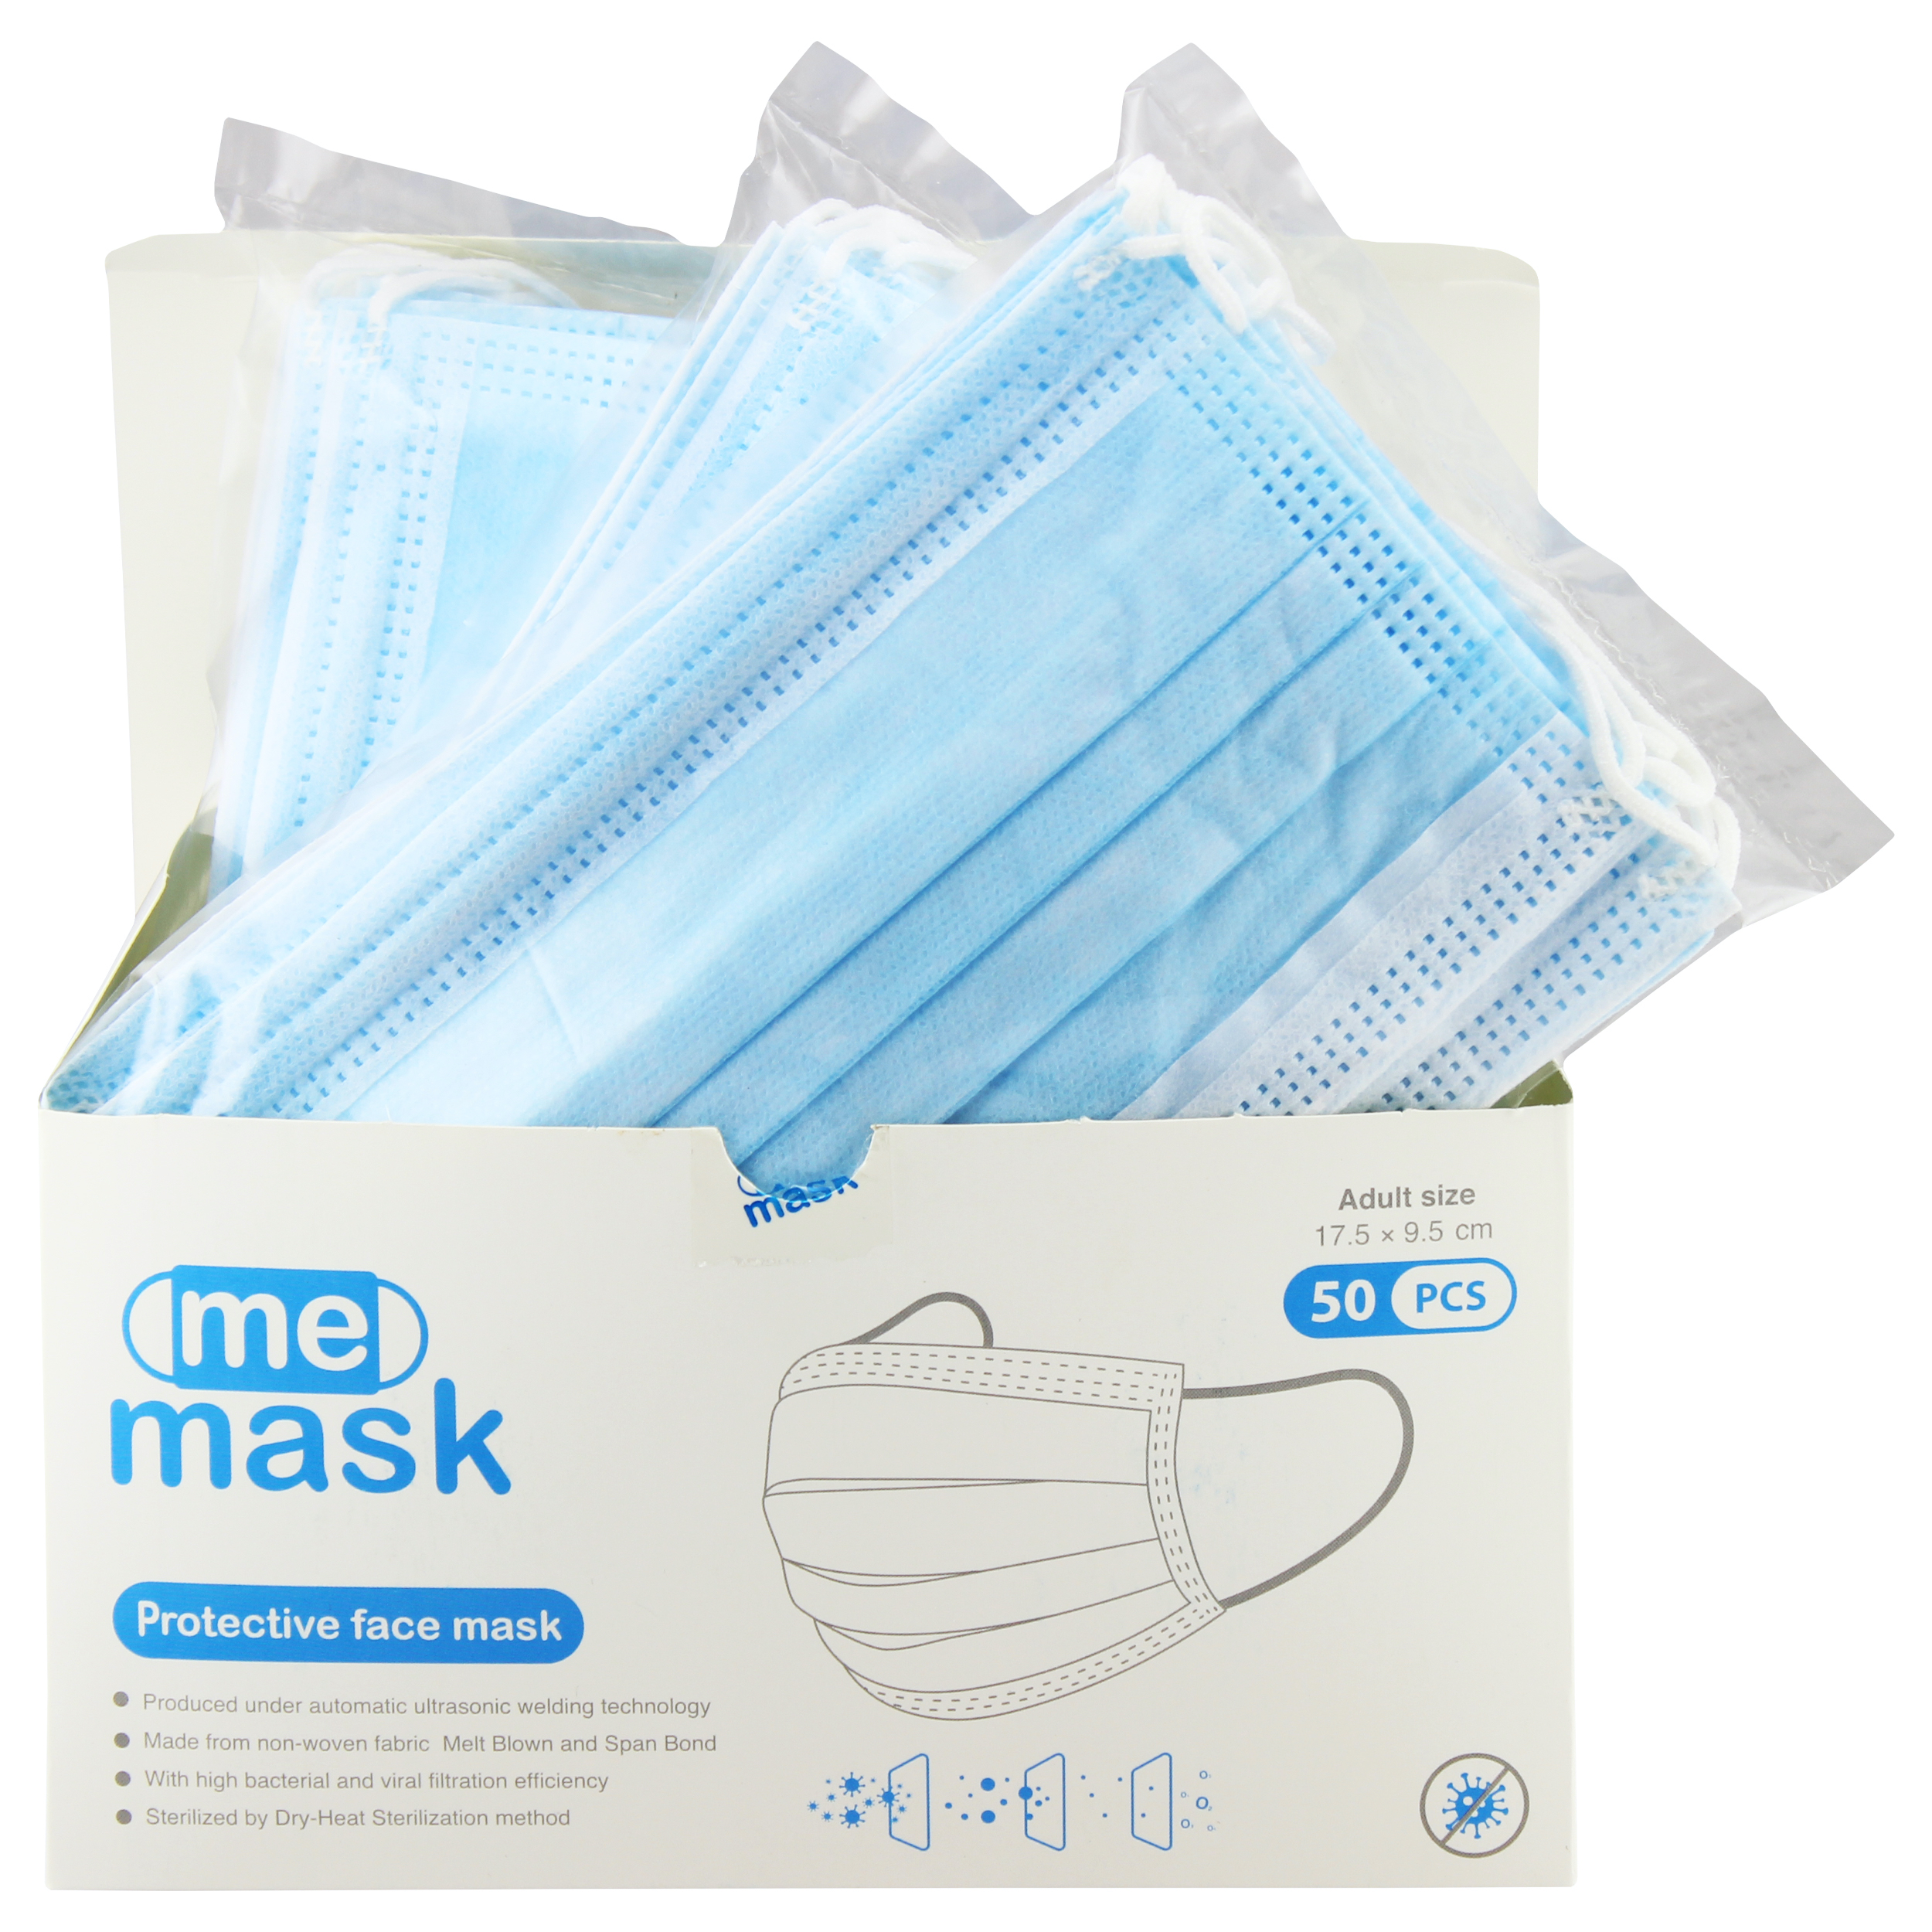 آنباکس ماسک تنفسی می ماسک مدل 8020 بسته 50 عددی توسط مریم هما در تاریخ ۱۱ خرداد ۱۴۰۰